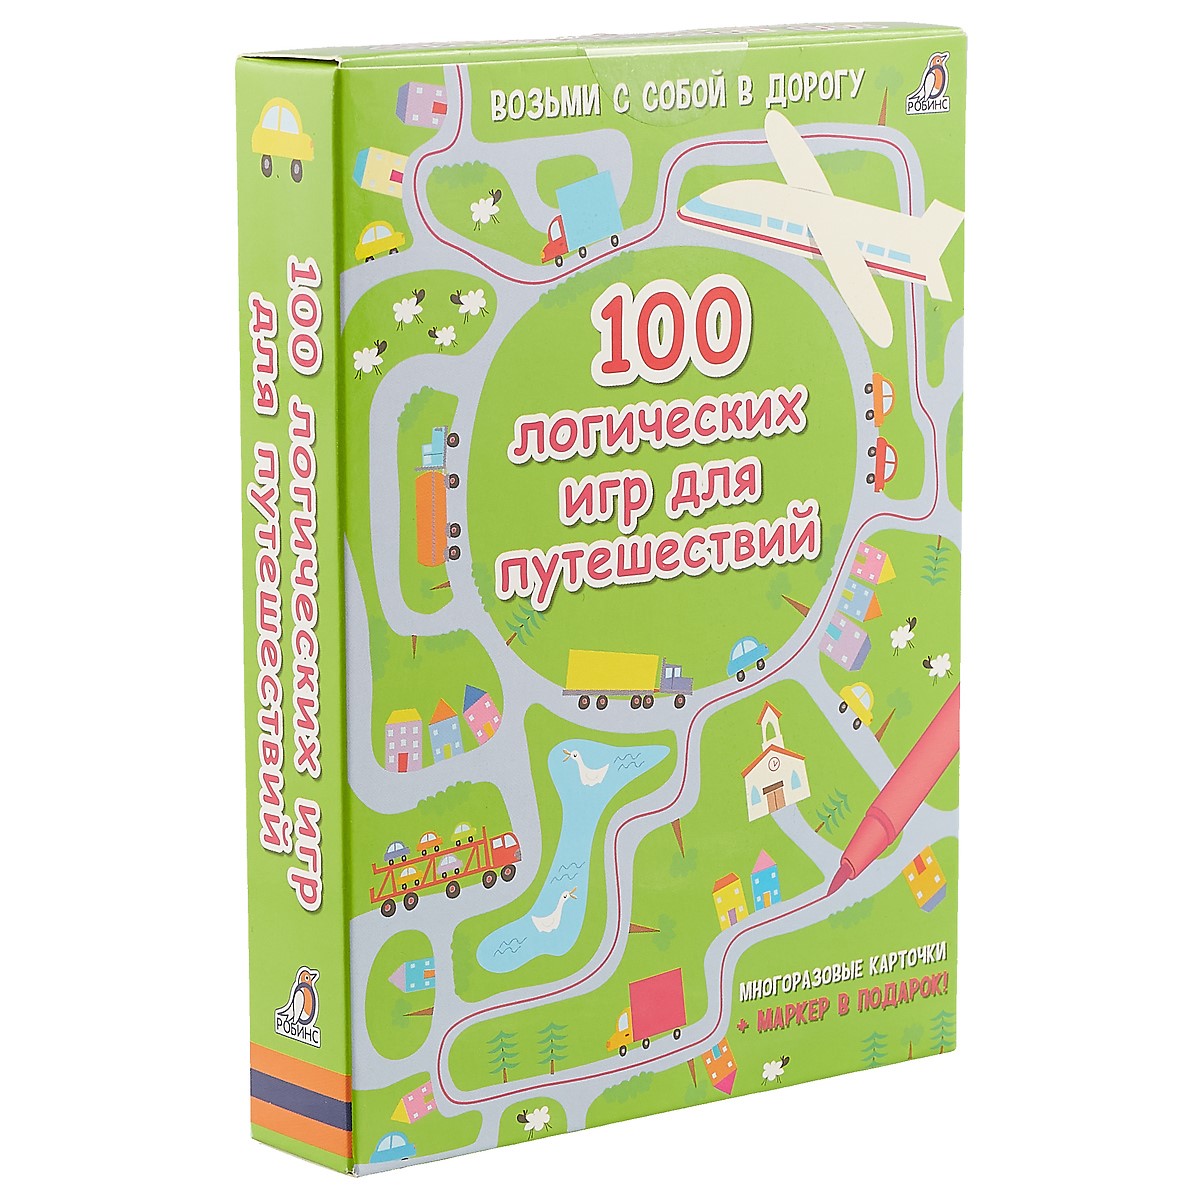 Асборн - карточки. 100 логических игр для путешествий раннее развитие робинс асборн карточки 100 увлекательных игр для путешествий